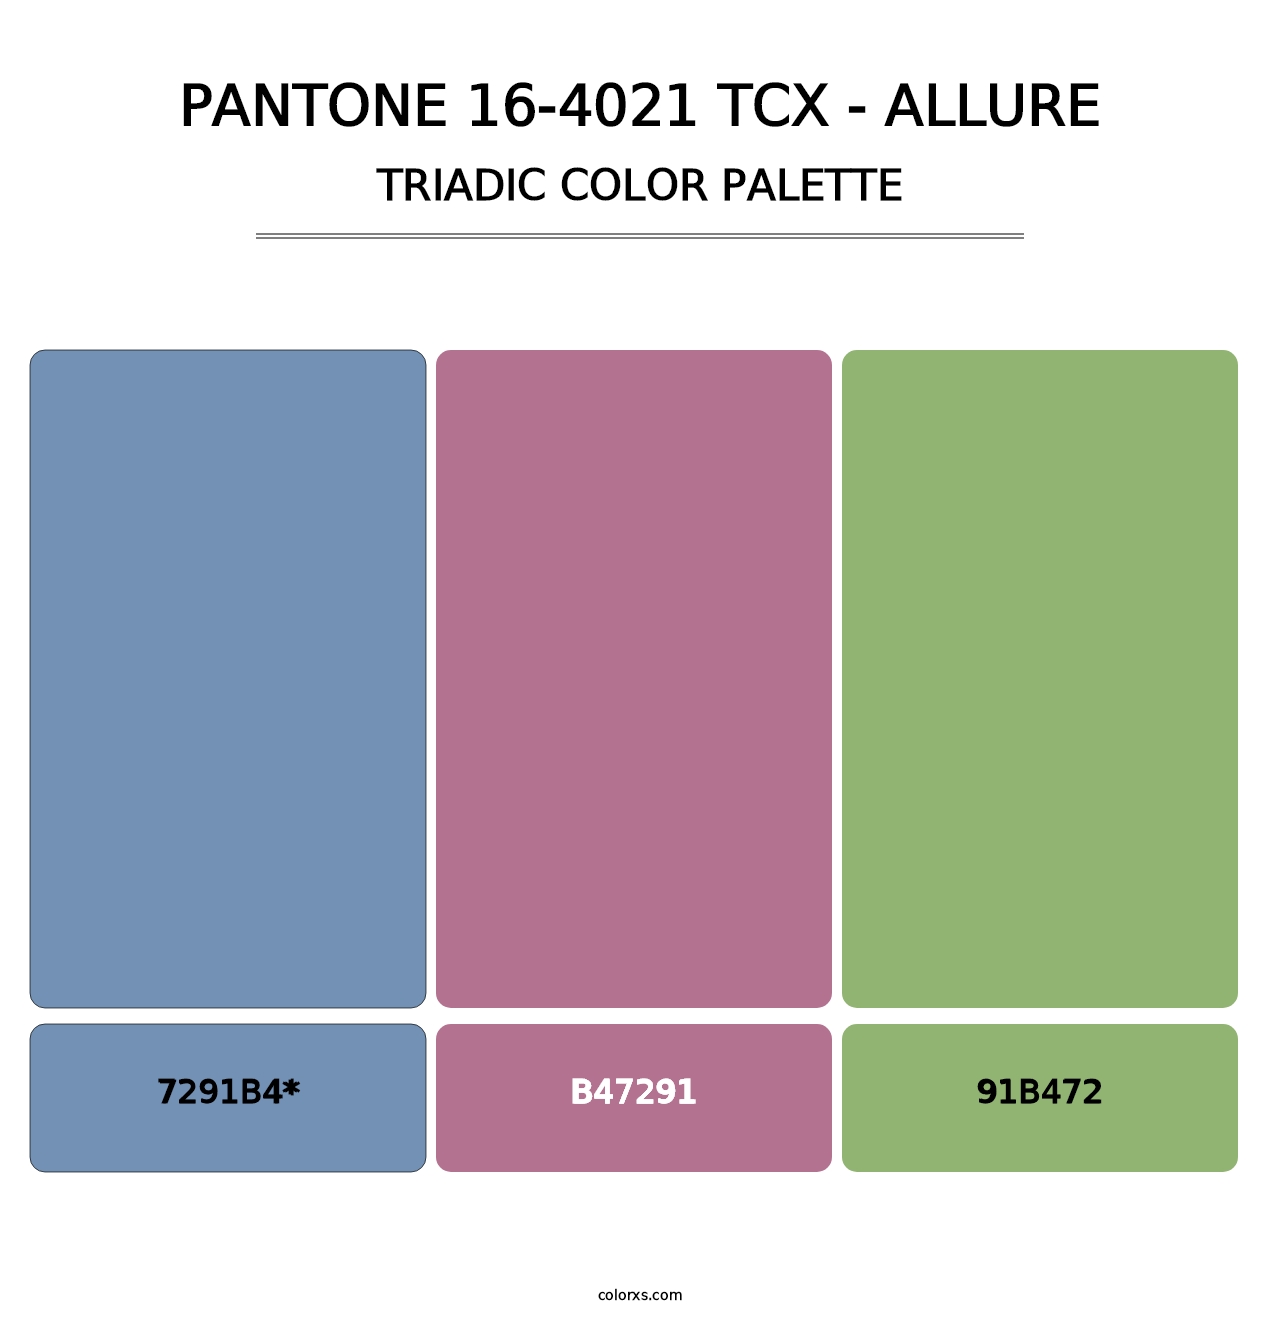 PANTONE 16-4021 TCX - Allure - Triadic Color Palette